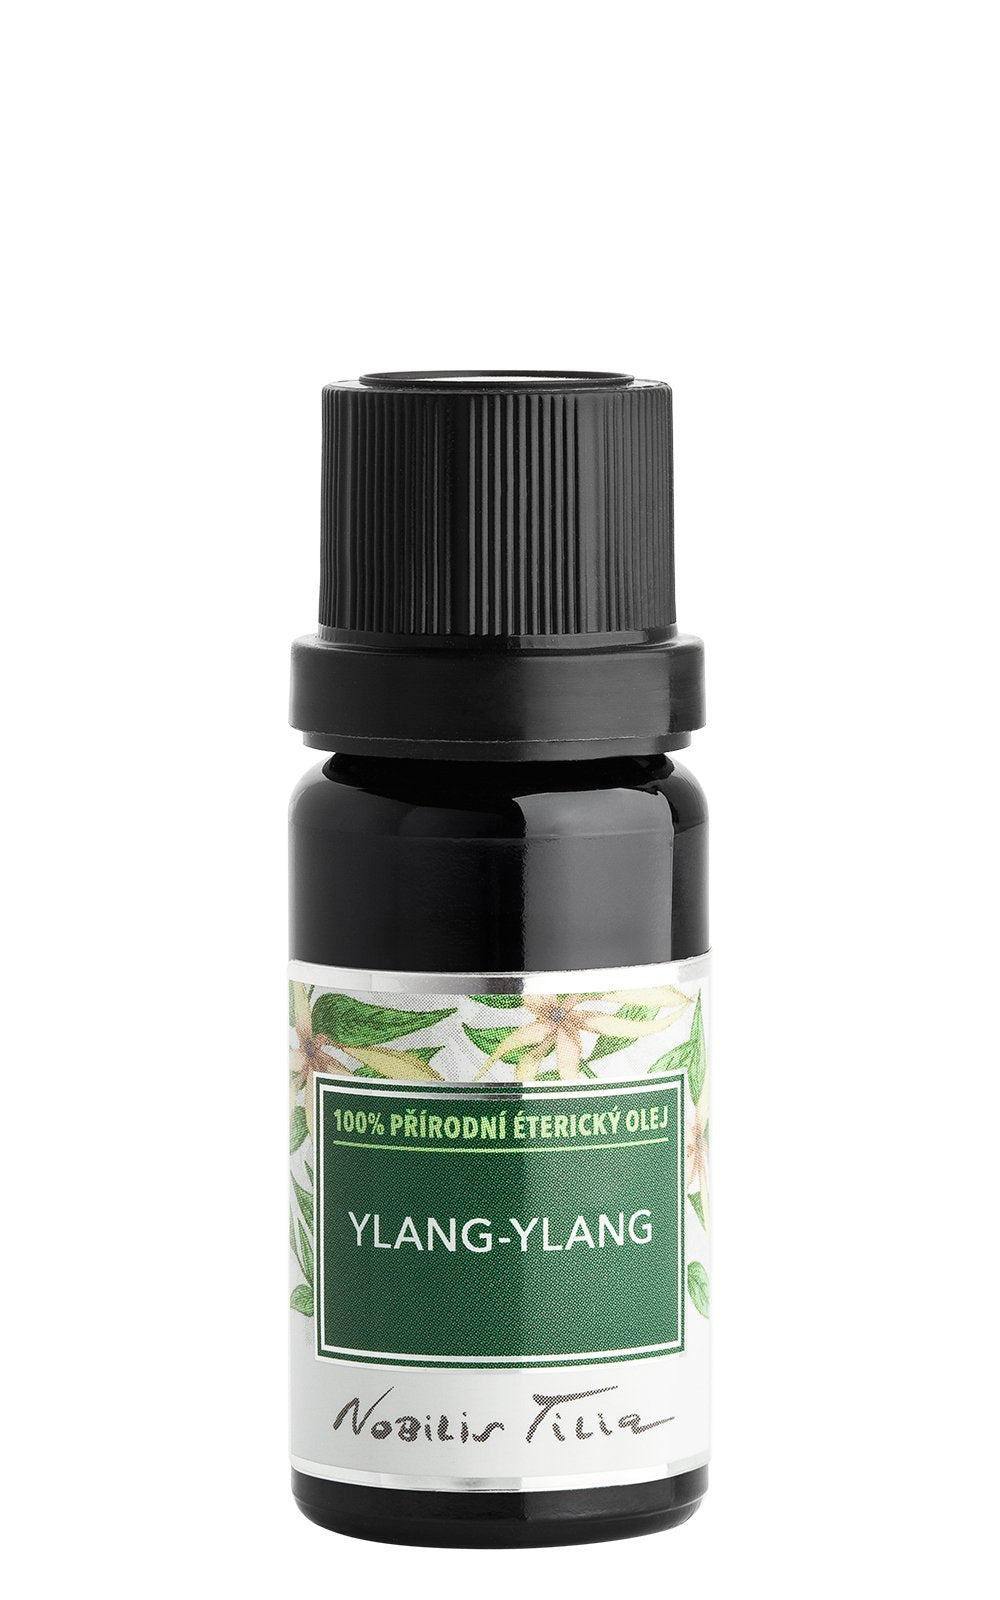 Nobilis Tilia Éterický olej - ylang-ylang (5 ml) - zklidňuje a harmonizuje emoce